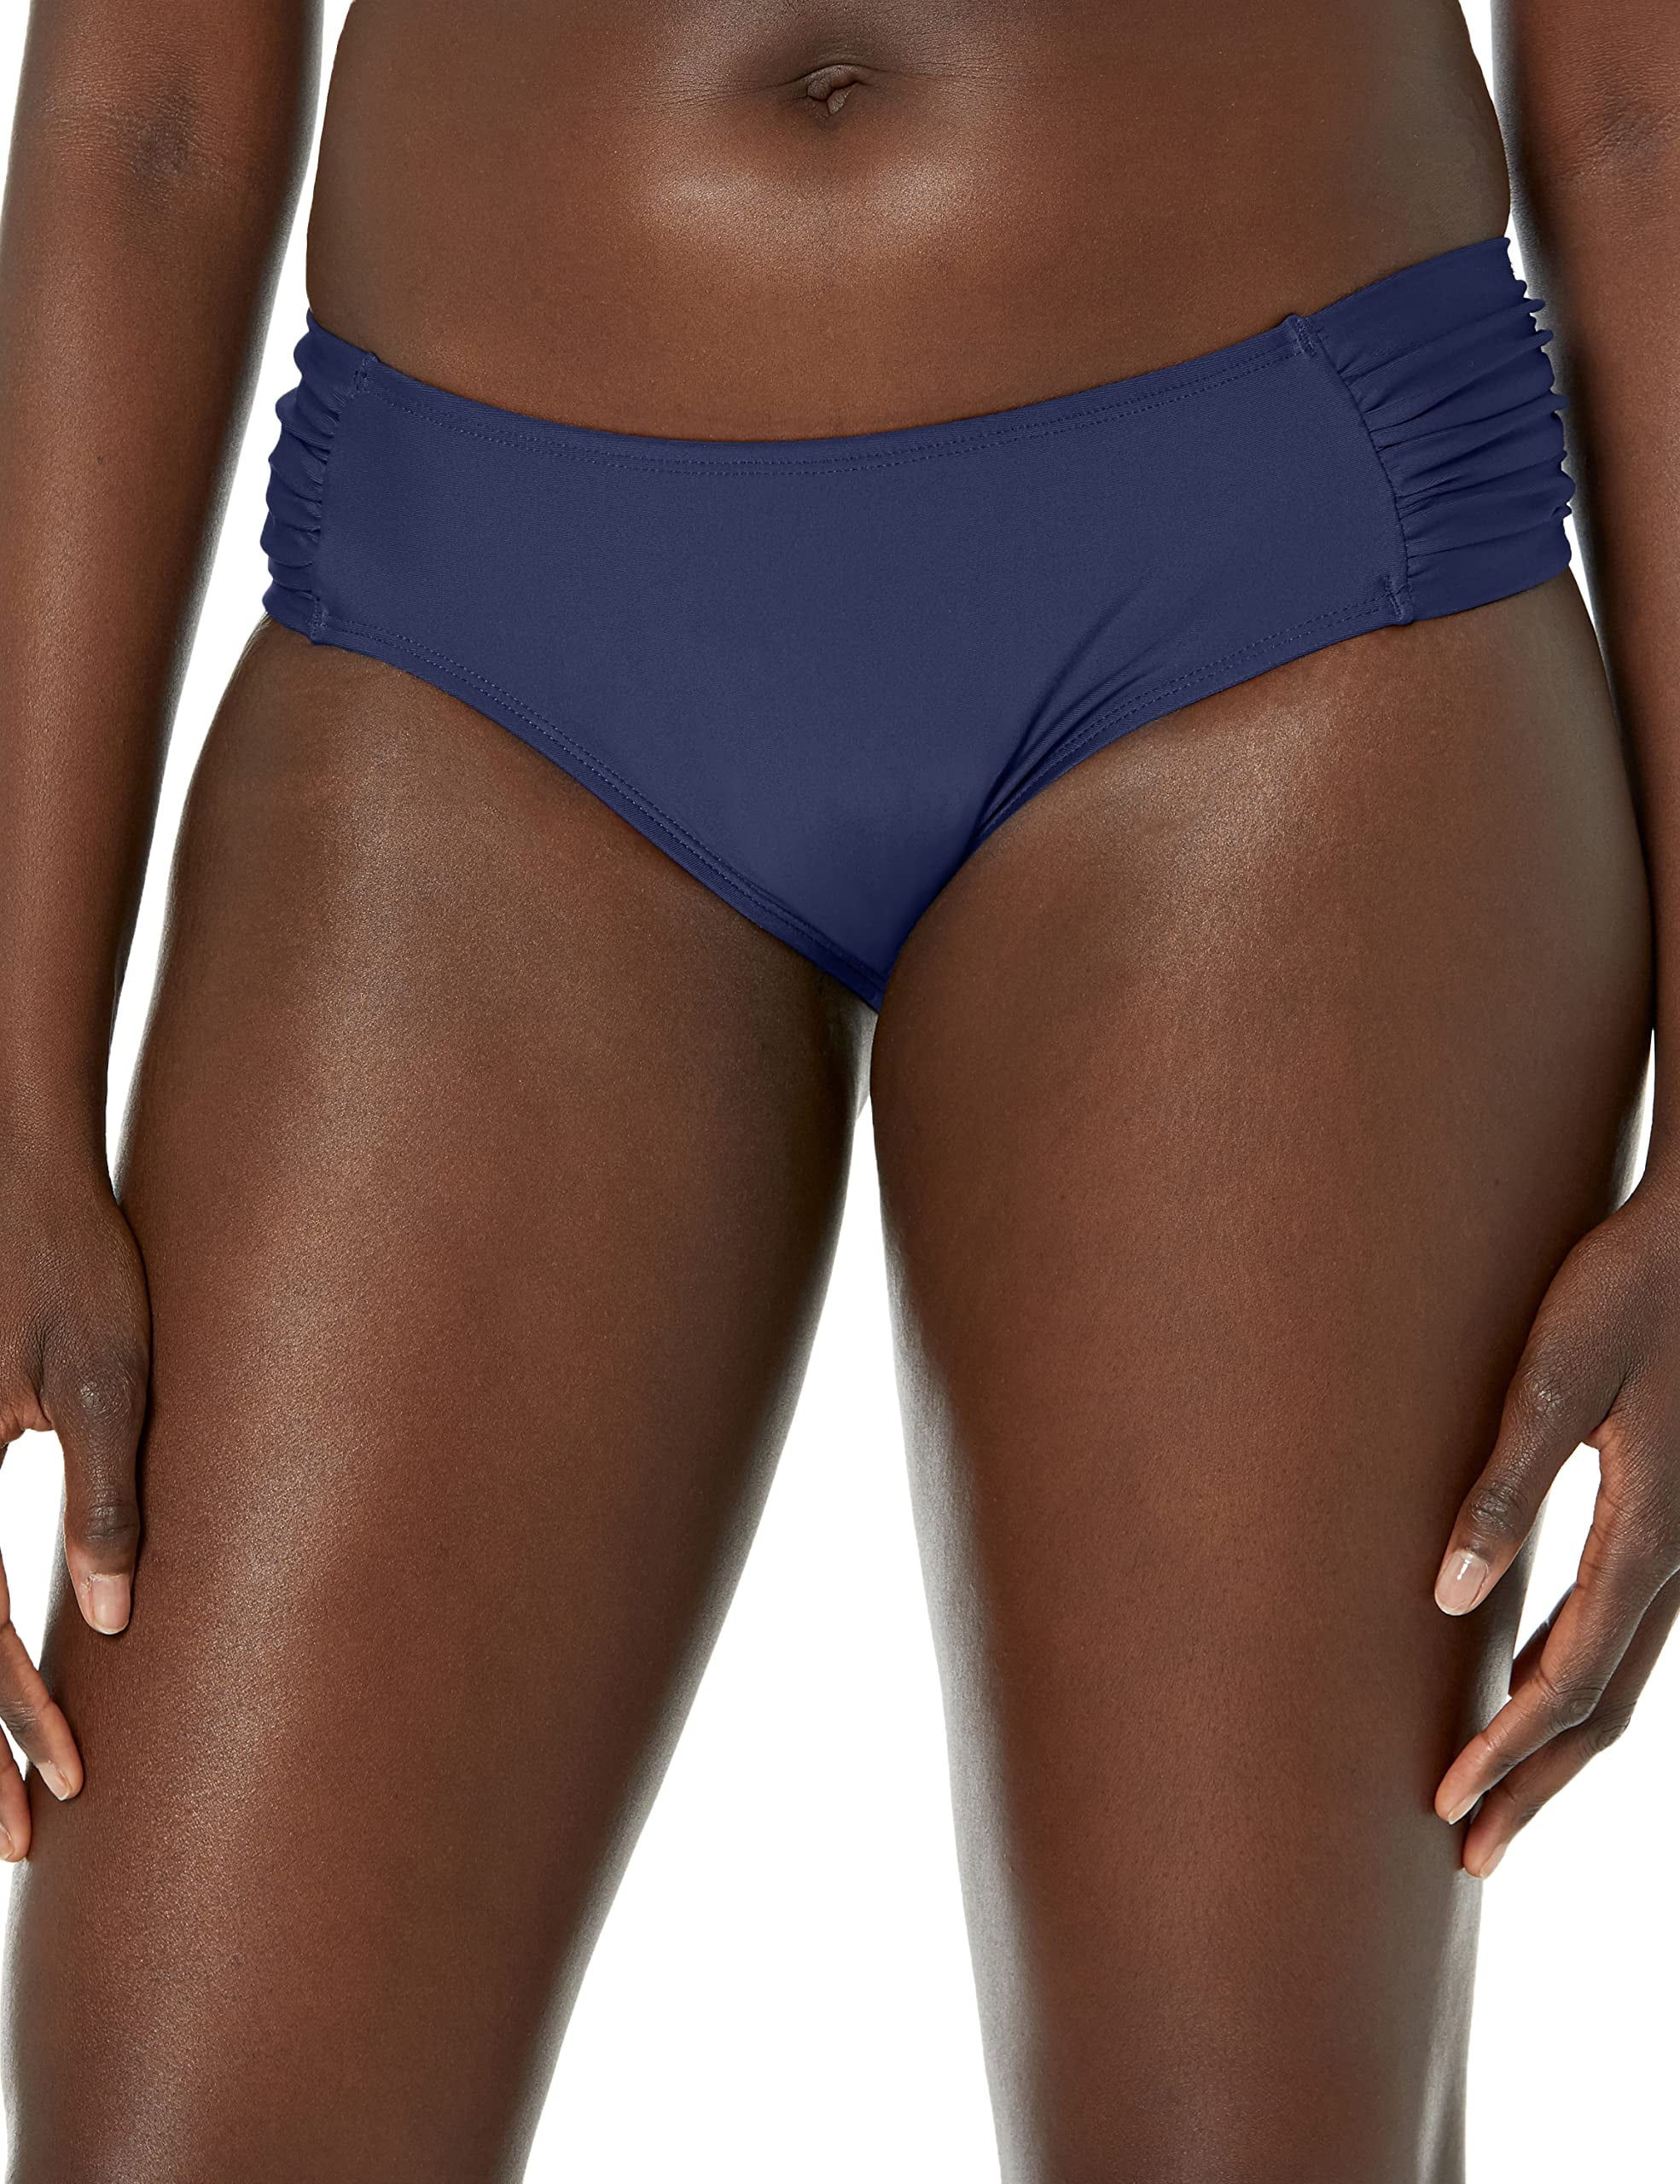 Relleciga Women's Full Coverage Swim Bottoms Mid Rise Ruched Sides Bikini  Bottom